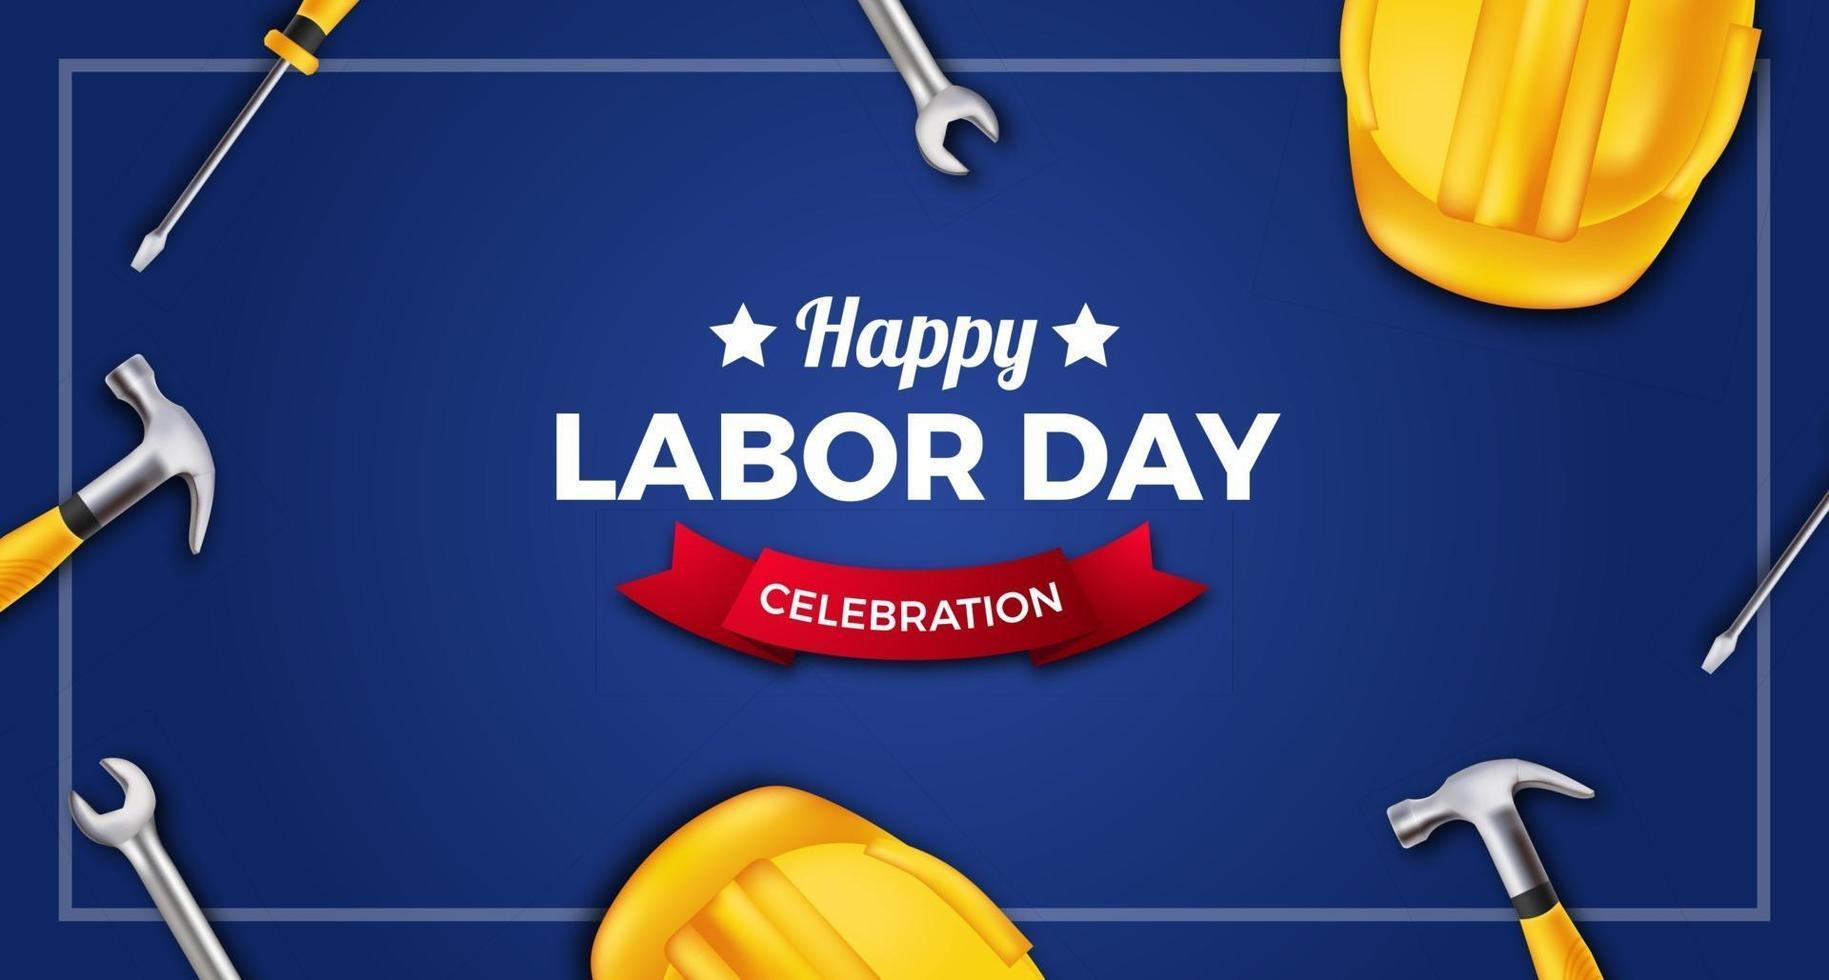 banner de cartaz de celebração do dia do trabalho feliz com capacete de segurança amarelo 3D, chave inglesa, martelo, chave de fenda em fundo azul vetor